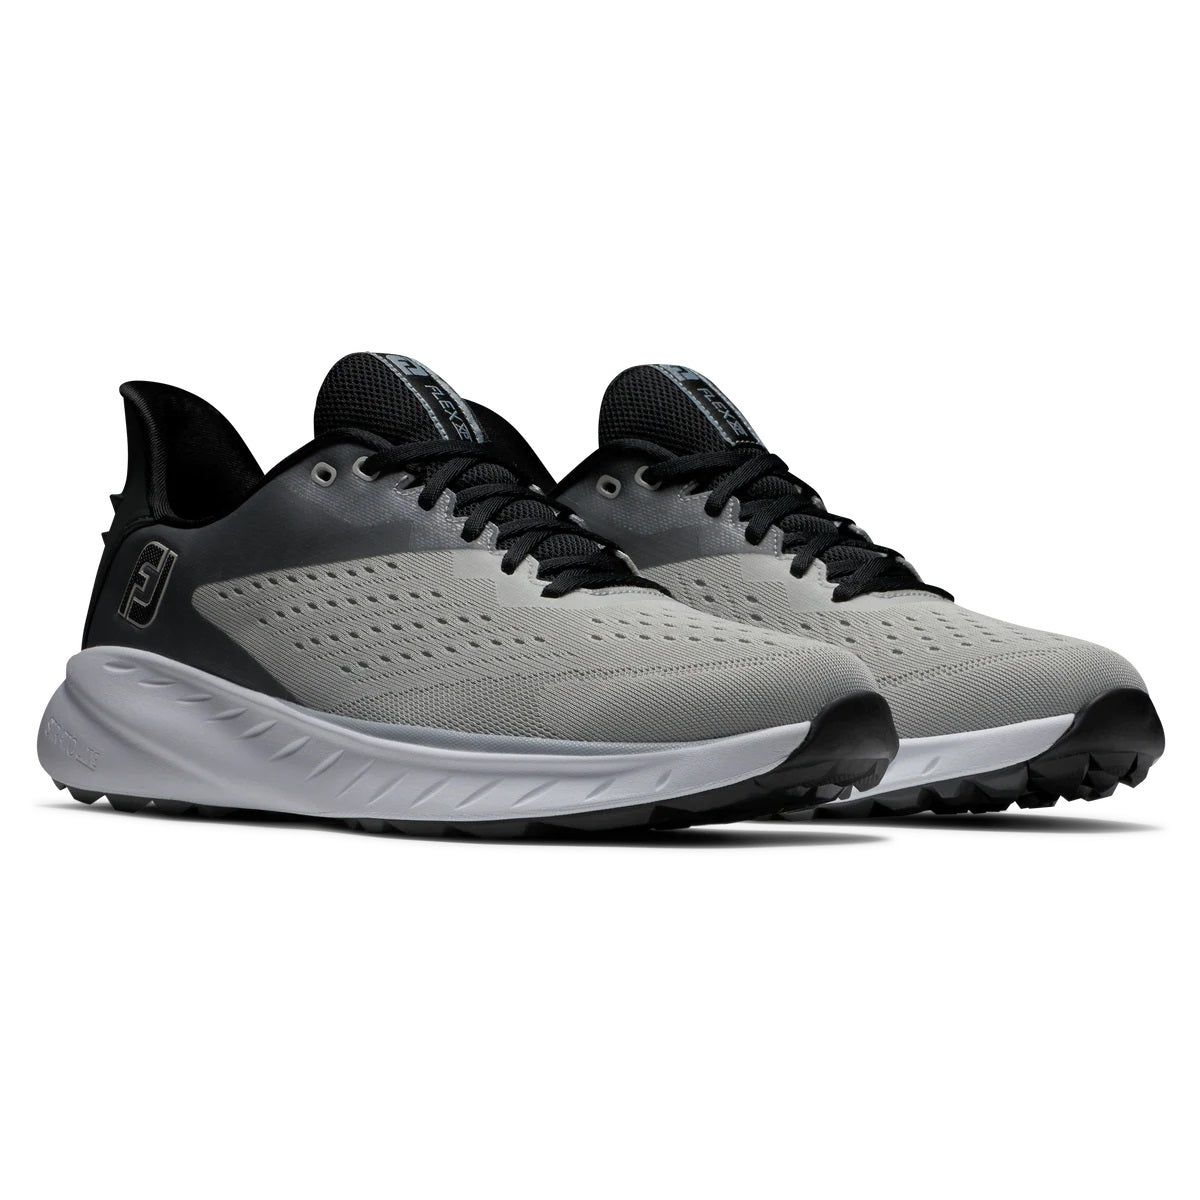 FootJoy Flex XP Golf Shoes Grey/White/Black 56281 - 2023